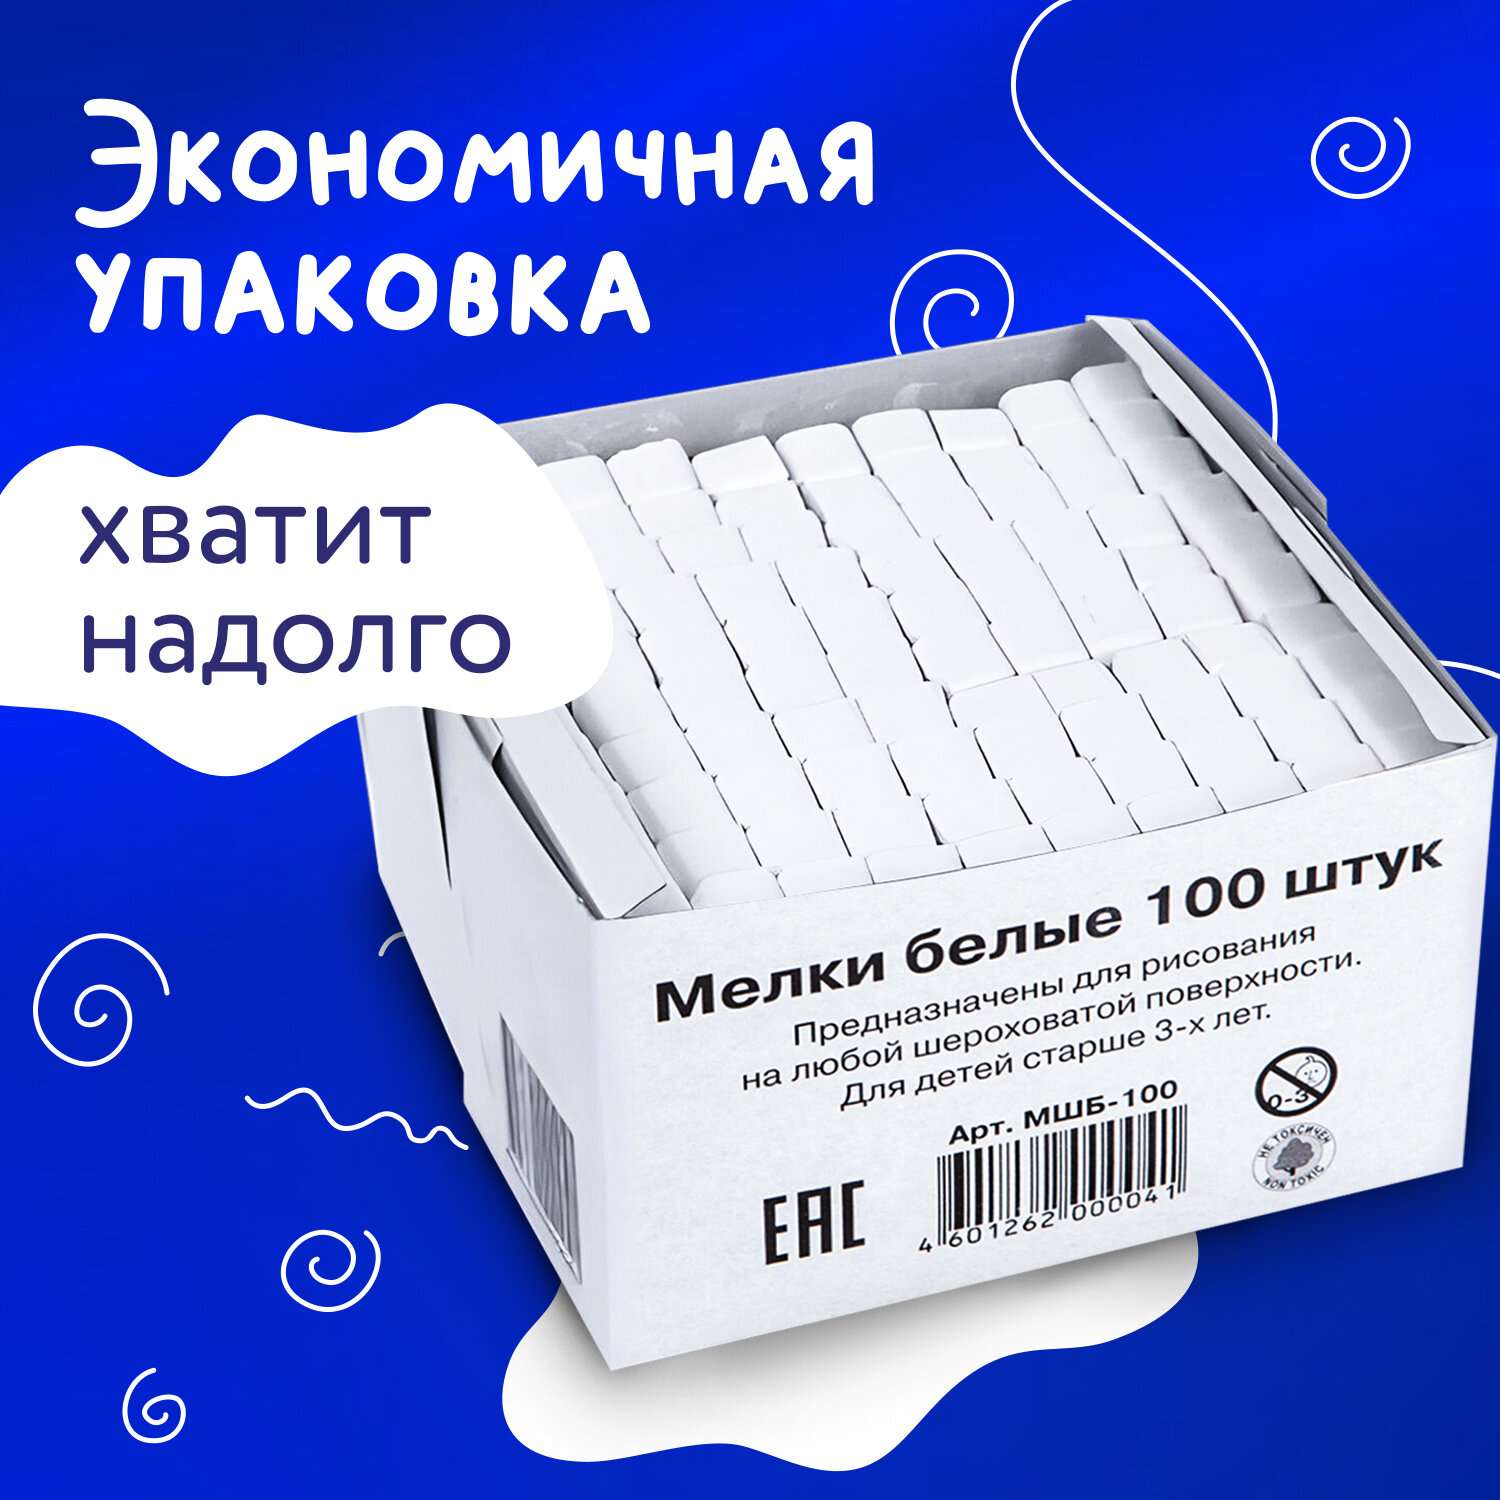 Мел АЛГЕМ белый набор 100 штук для доски школьный квадратный - фото 4